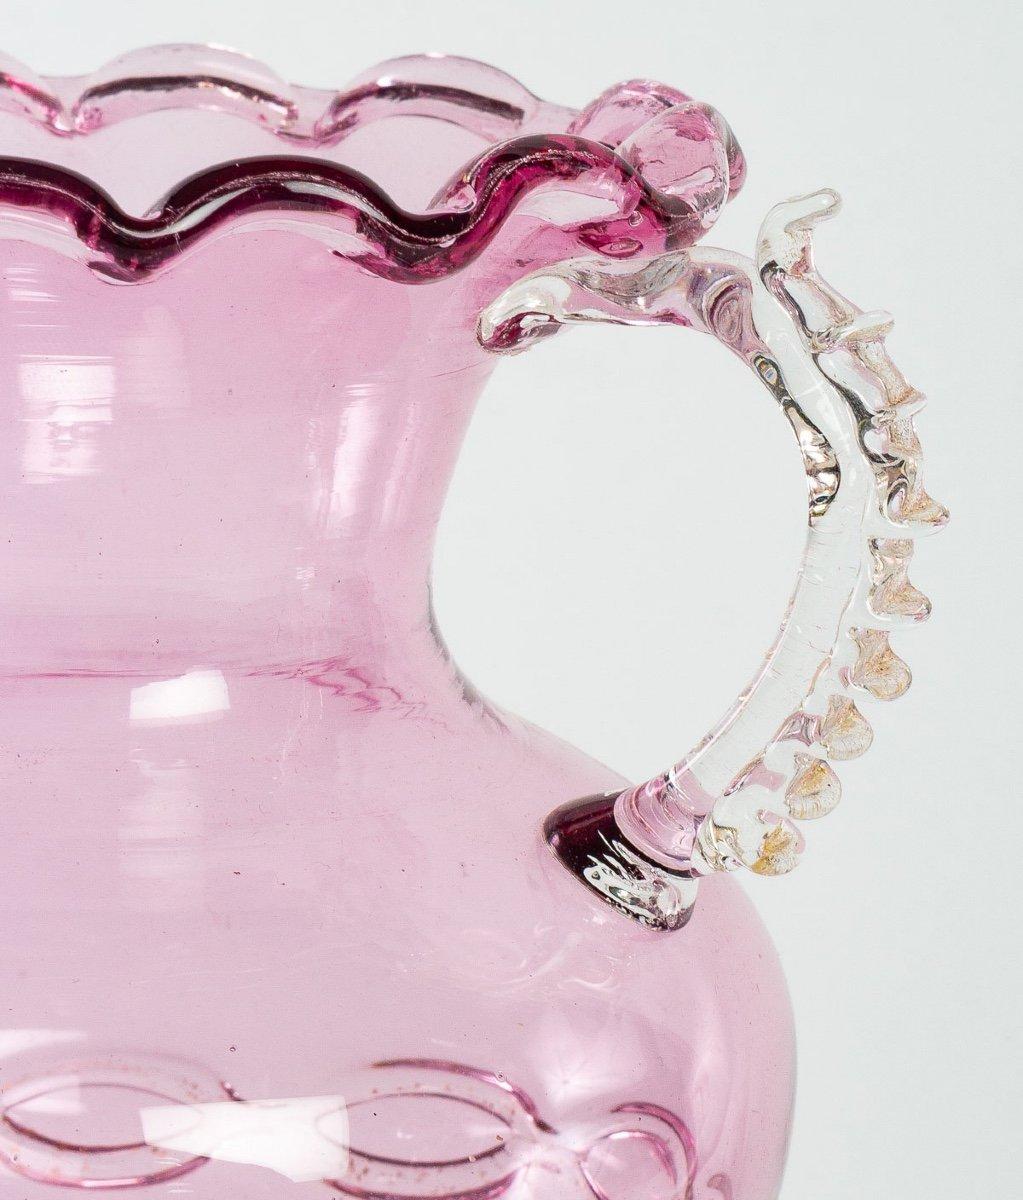 Schönes Glas, kampanförmig, auf dem Fuß, schillernde rosa Farbe. Ihr Schliff ist gelappt und am unteren Rand mit einer sehr hübschen Kette mit Goldpulvereinlage verziert.

Eine gerippte Kugel, fein hervorgehoben durch sechs Blumen mit